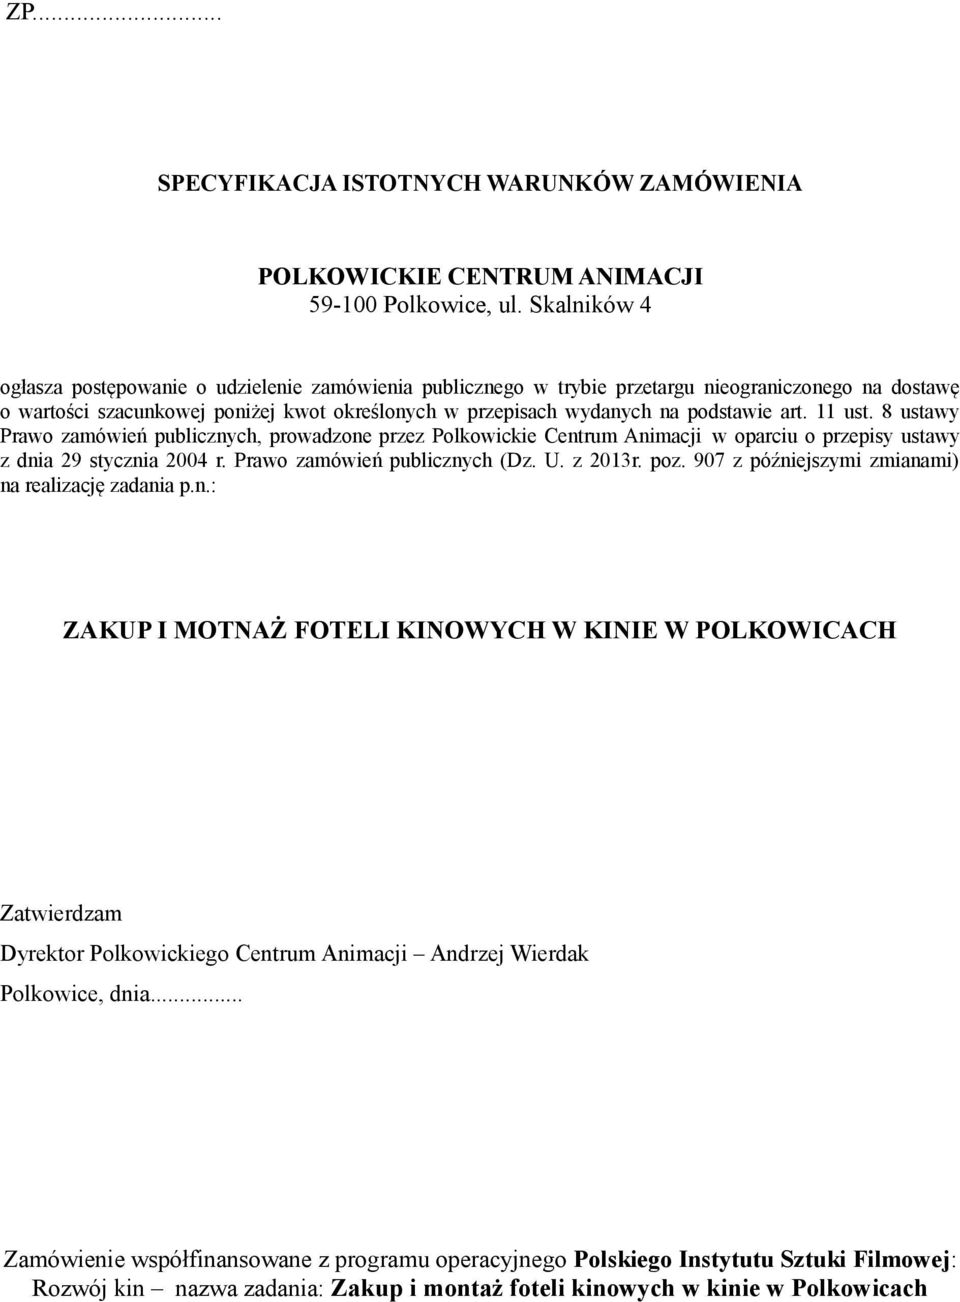 art. 11 ust. 8 ustawy Prawo zamówień publicznych, prowadzone przez Polkowickie Centrum Animacji w oparciu o przepisy ustawy z dnia 29 stycznia 2004 r. Prawo zamówień publicznych (Dz. U. z 2013r. poz.